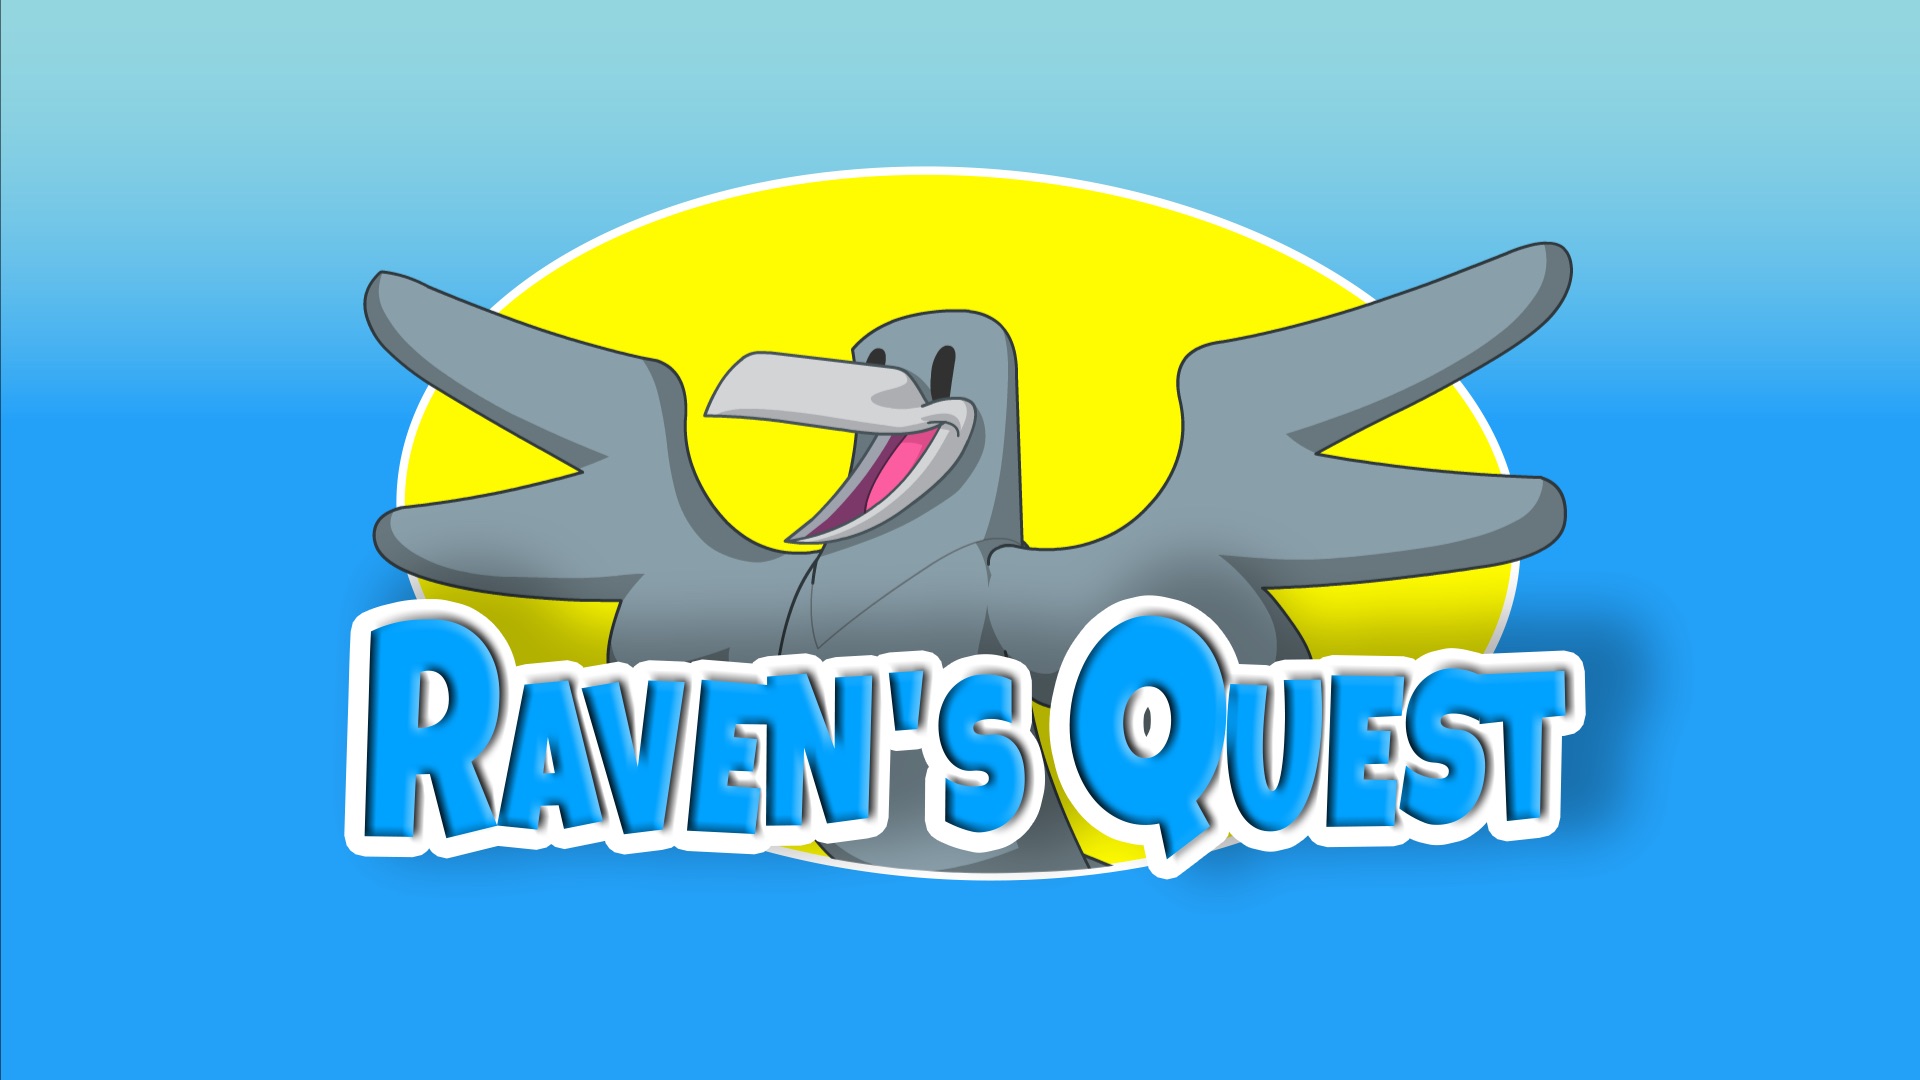 Raven quest project artofzoo